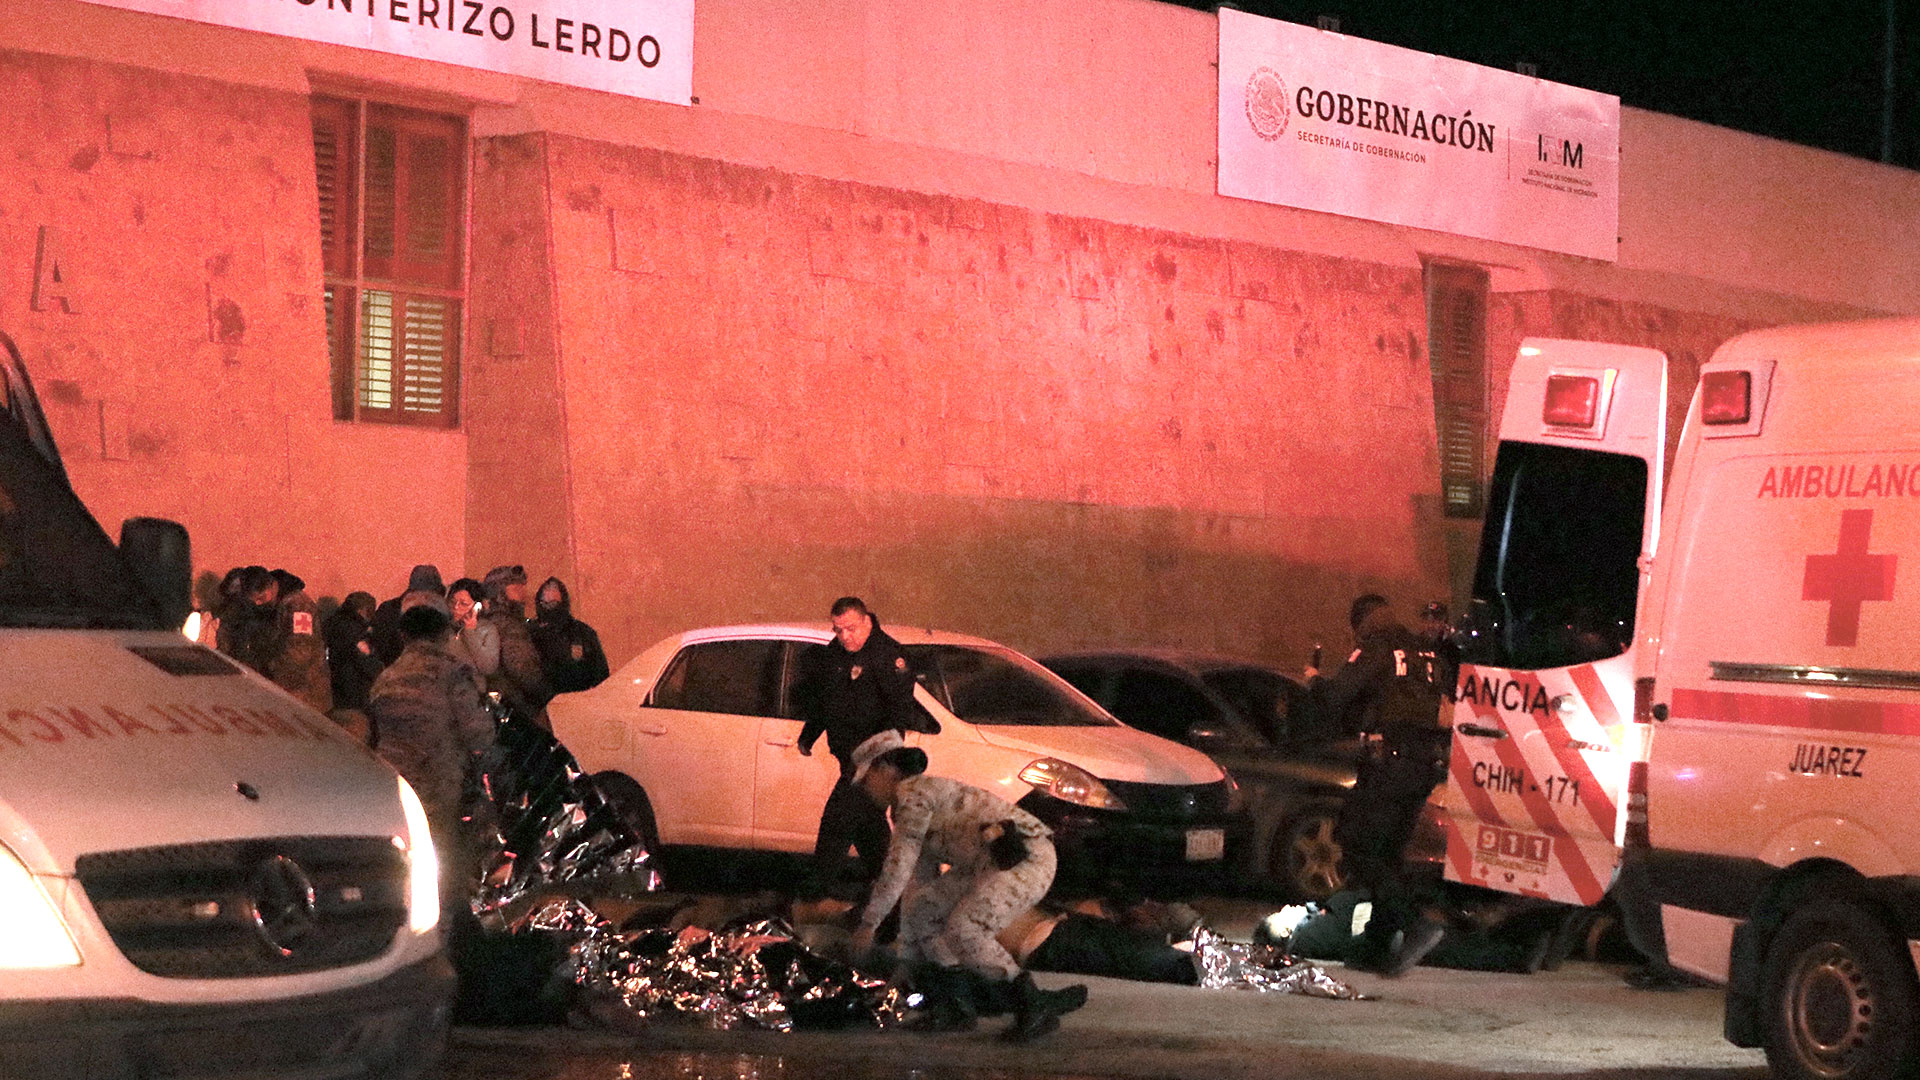 La cifra de muertos subió a 40, confirmaron las autoridades mexicanas 
(HERIKA MARTINEZ / AFP)